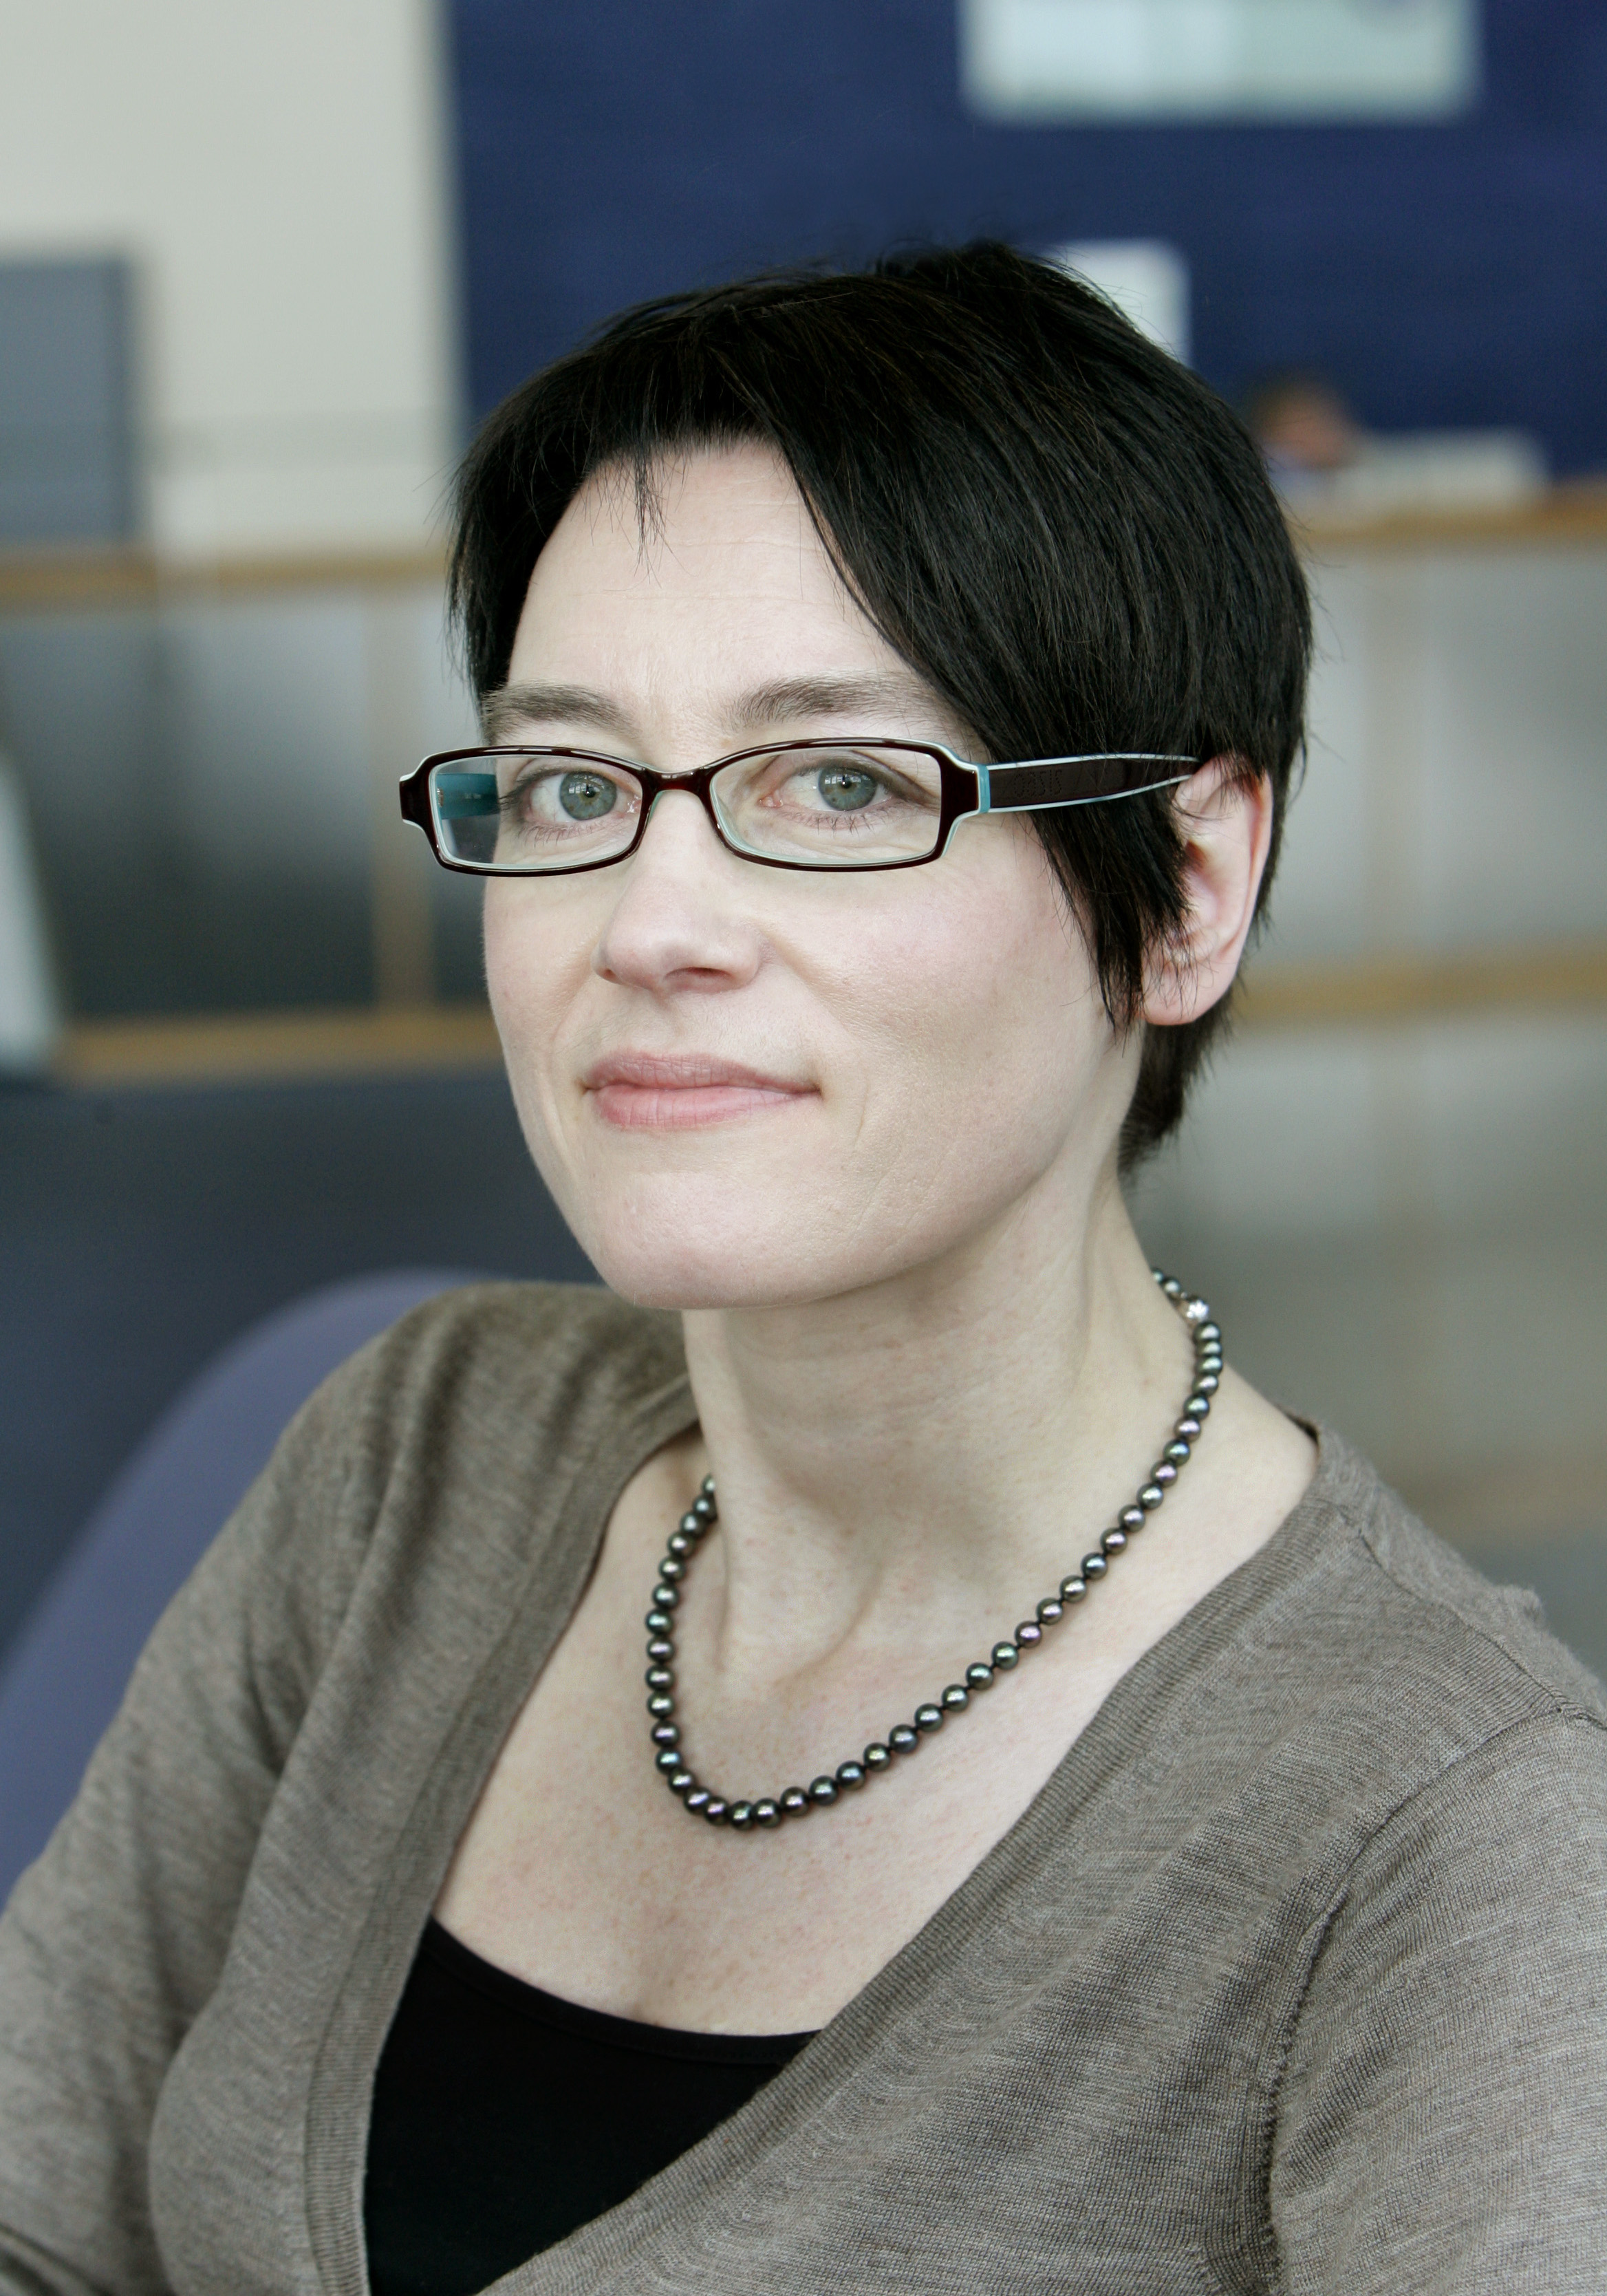 Profile image of Julie Byrne.